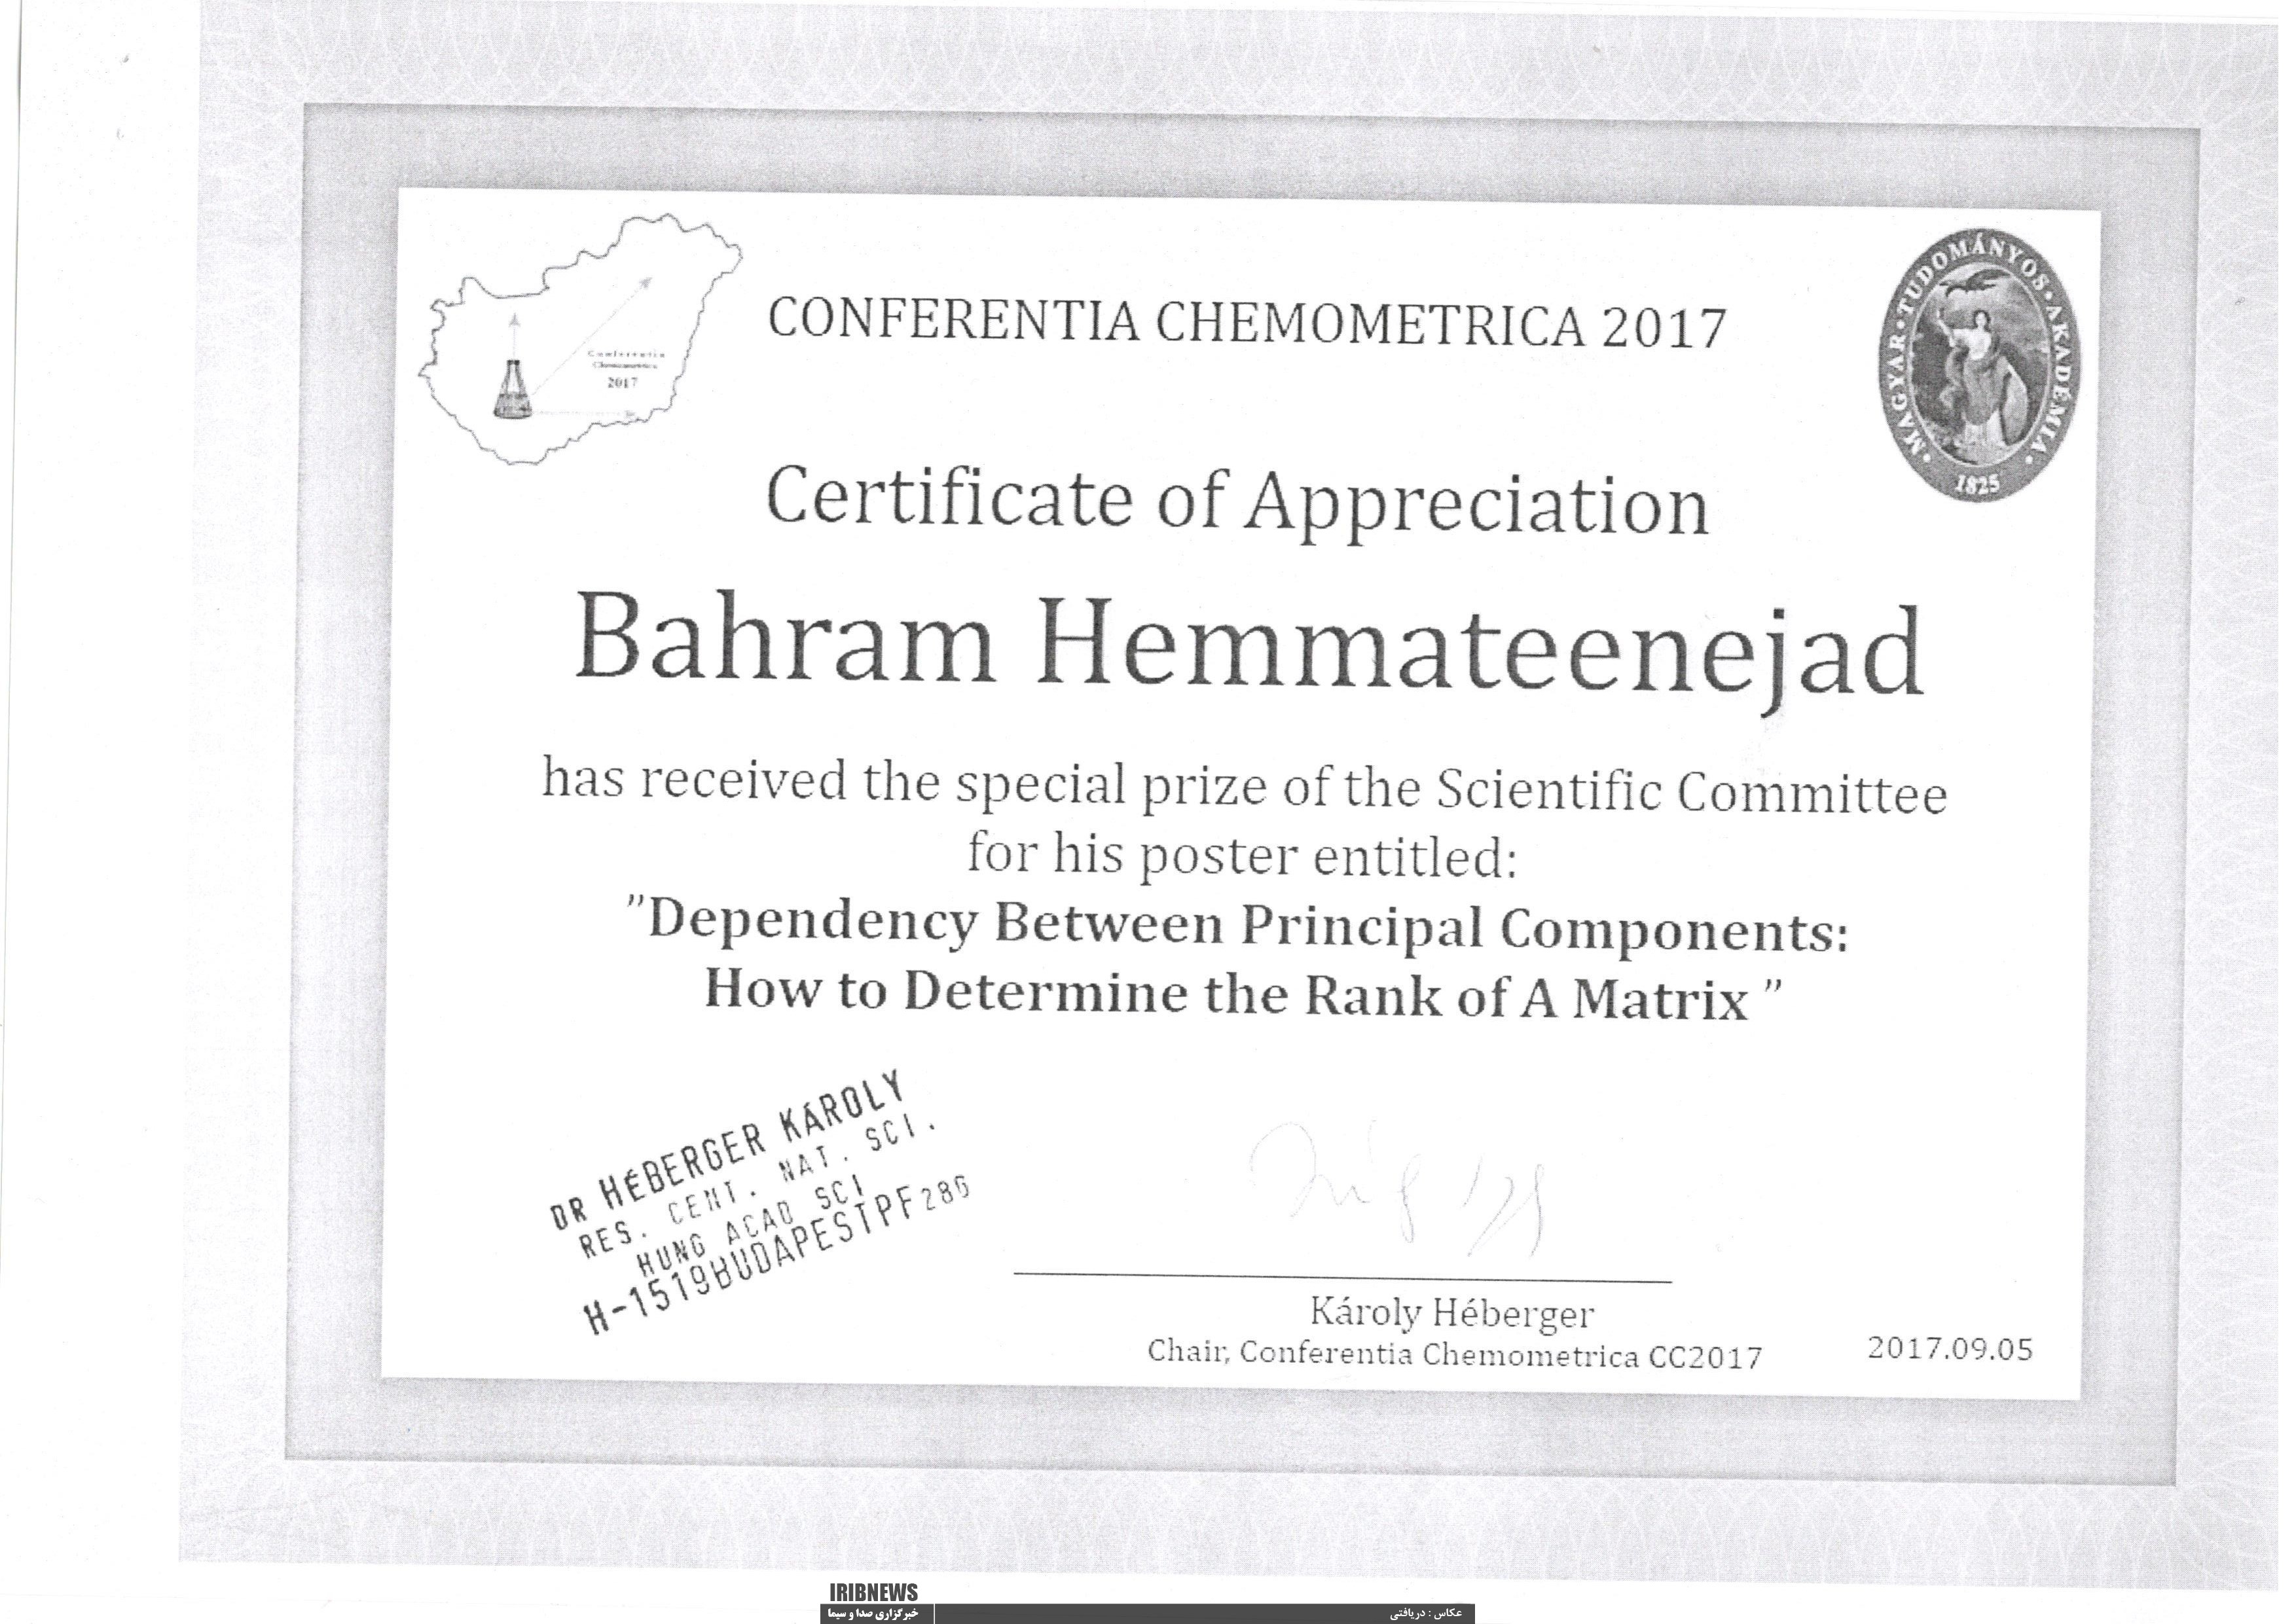 جایزه مخصوص کنفرانس بین المللی شیمی سنجی از آن استاد دانشگاه شیراز